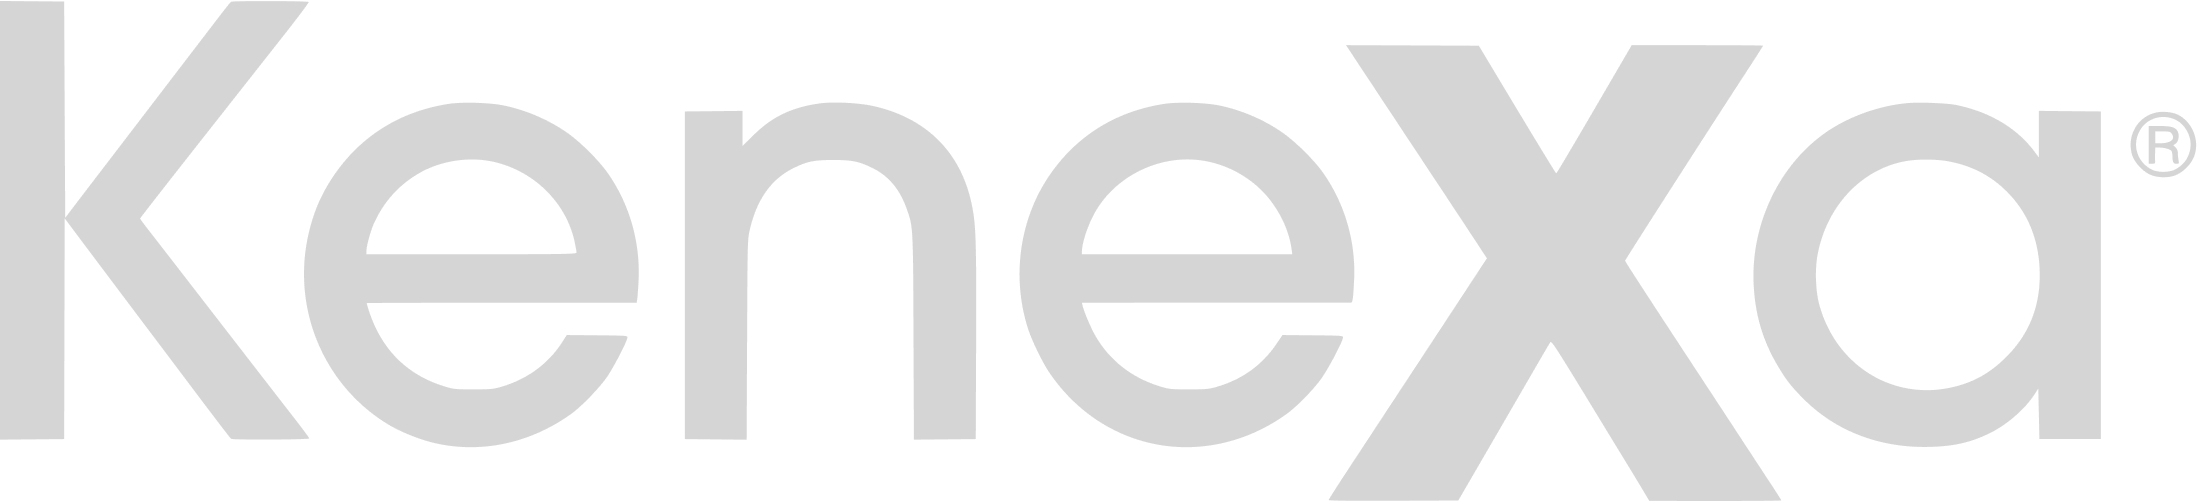 Kenexa logo in greyscale